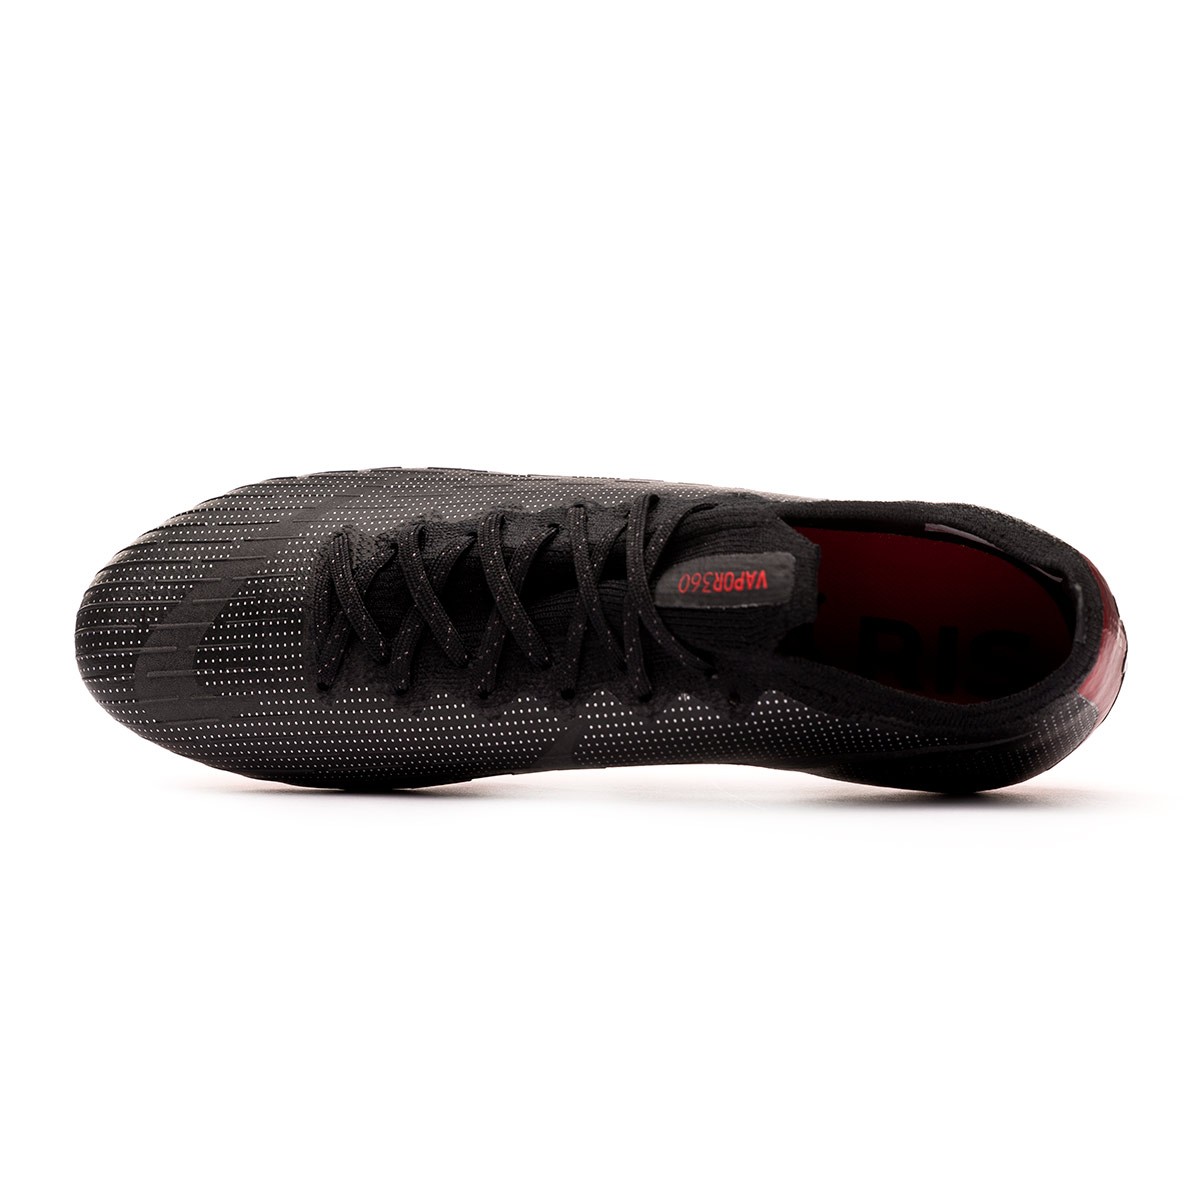 Boot Nike Mercurial Vapor XII Elite SE Jordan x PSG FG Black - Leaked ...